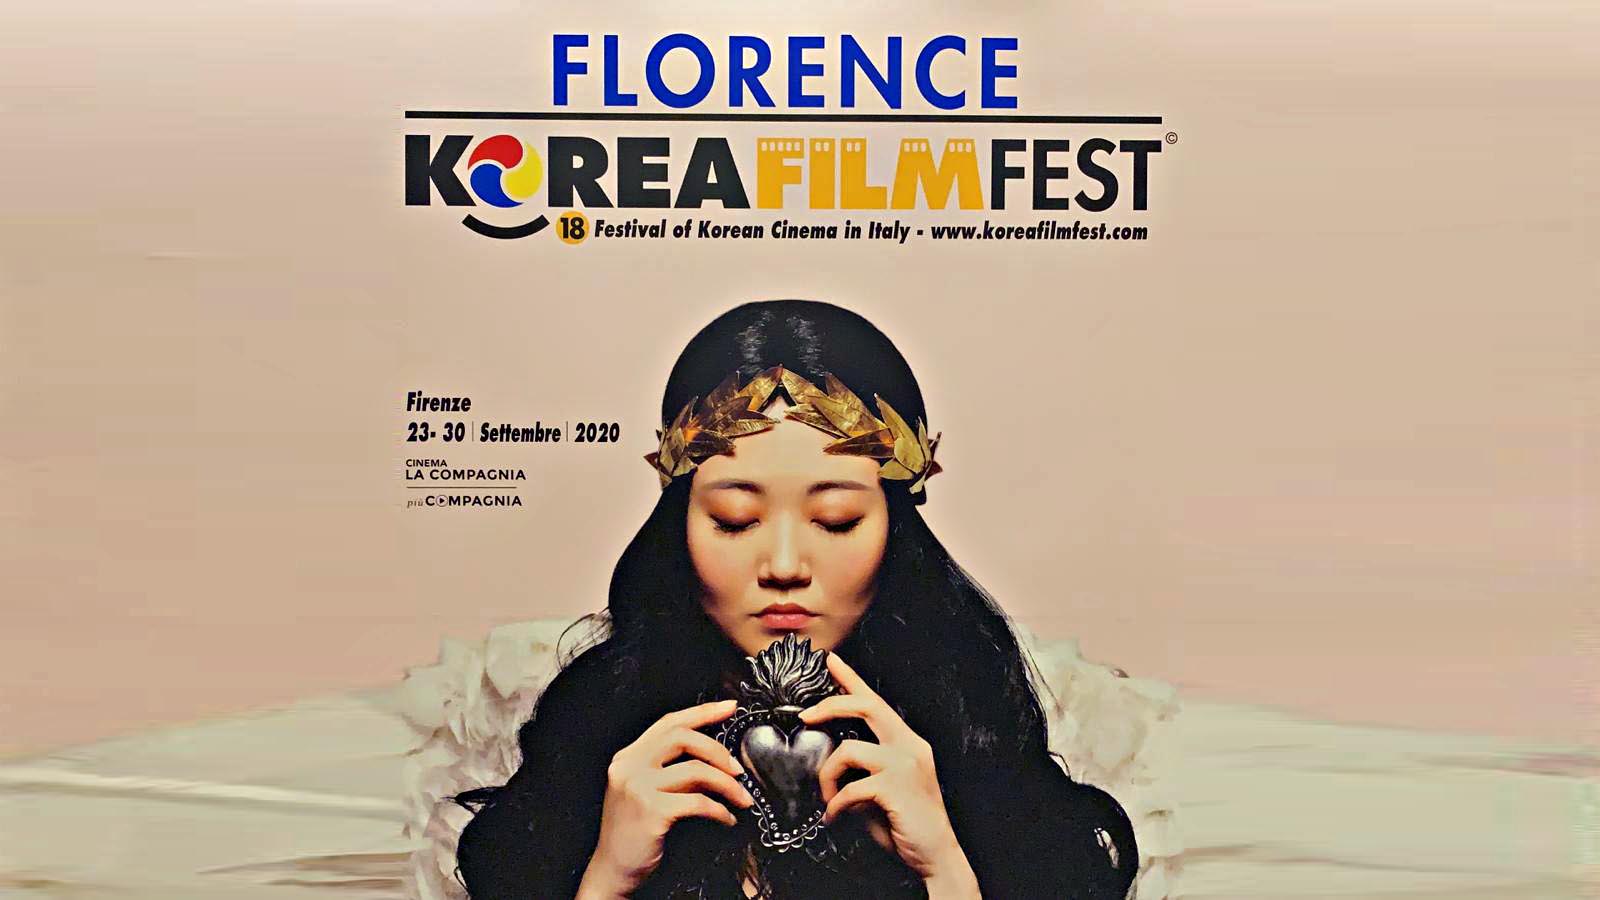 Korean Film Fest